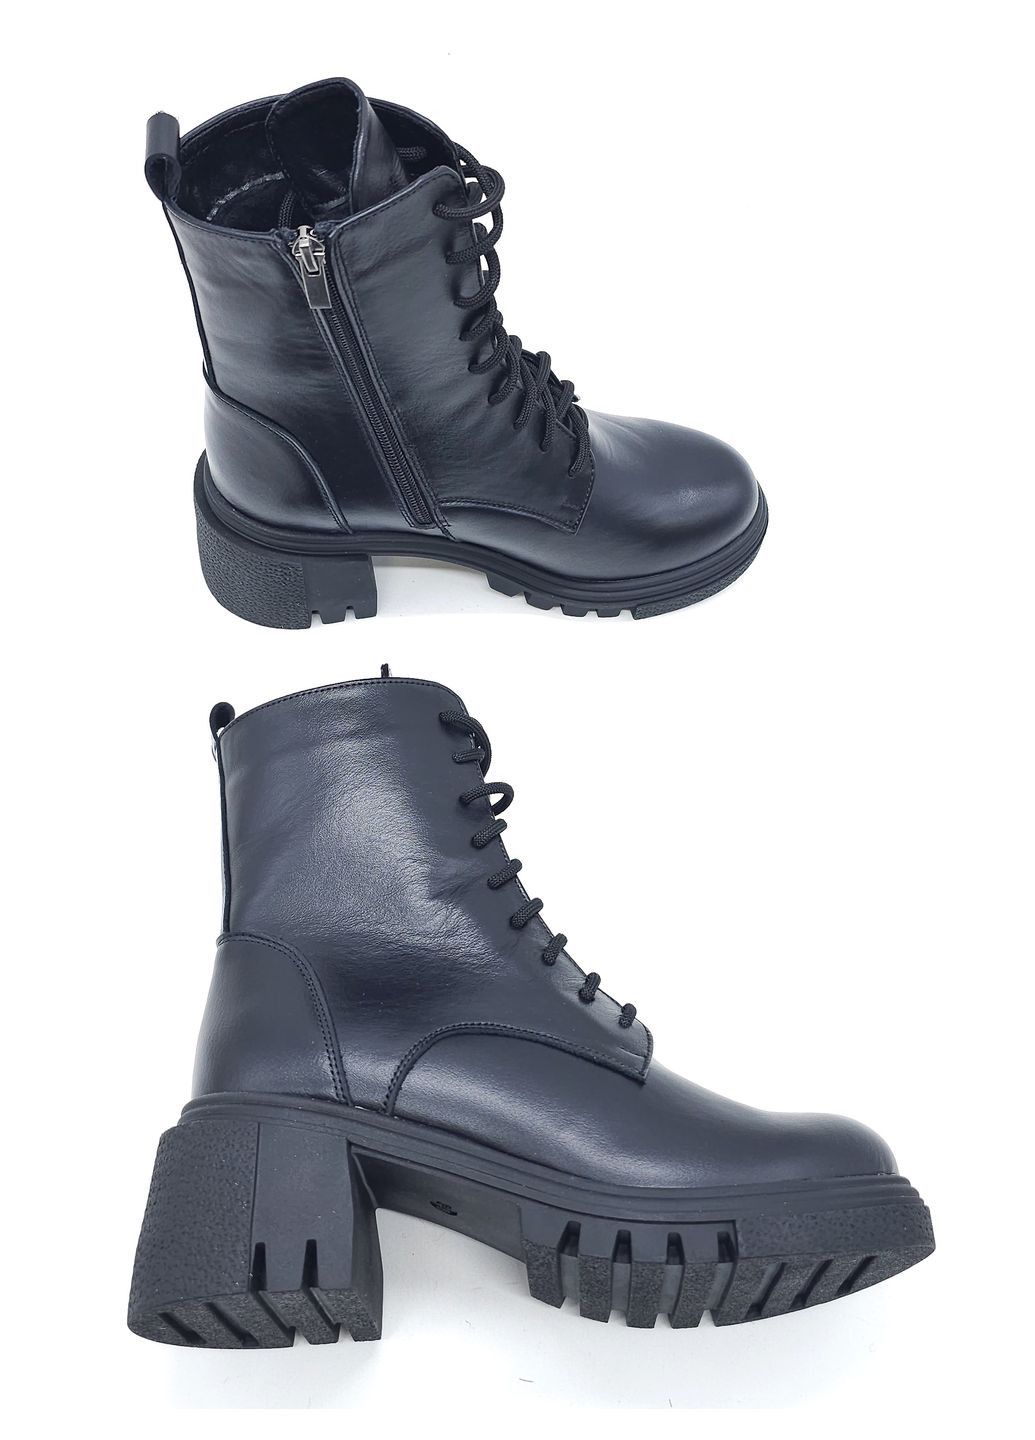 Жіночі черевики зимові чорні шкіряні MR-16-1 25,5 см (р) Morento (271828054)